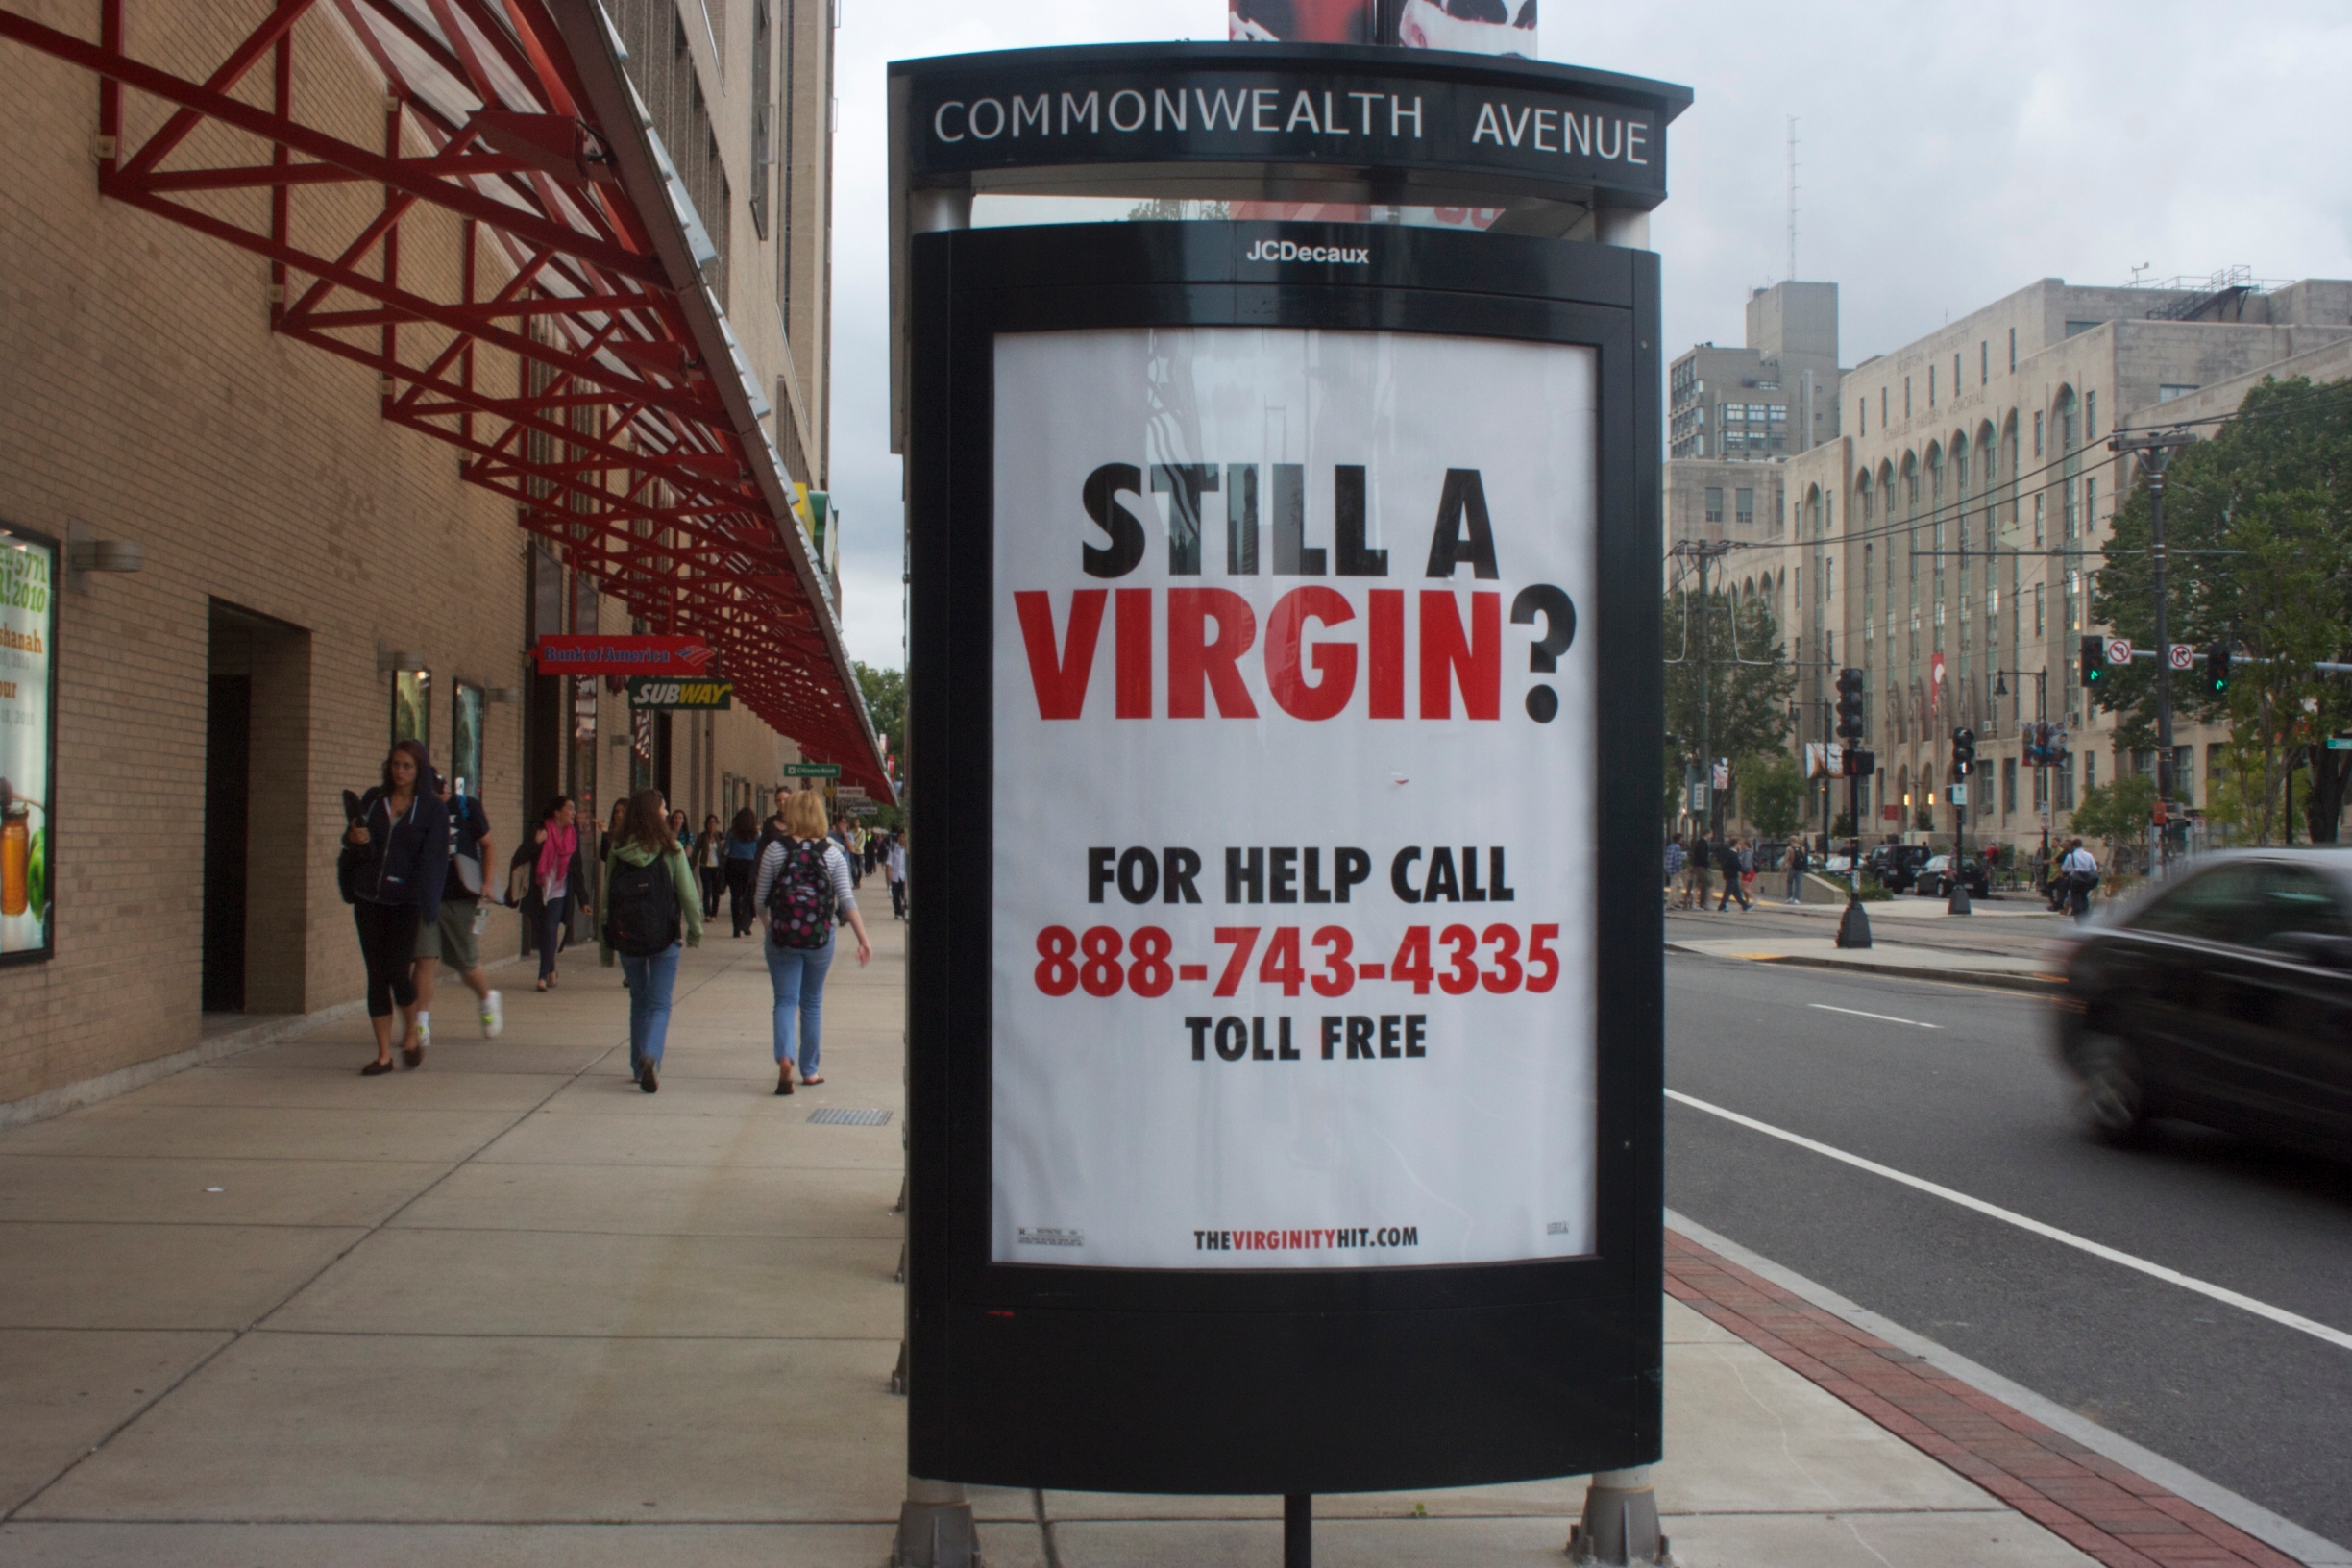 Viral marketing targets virgins | UWIRE